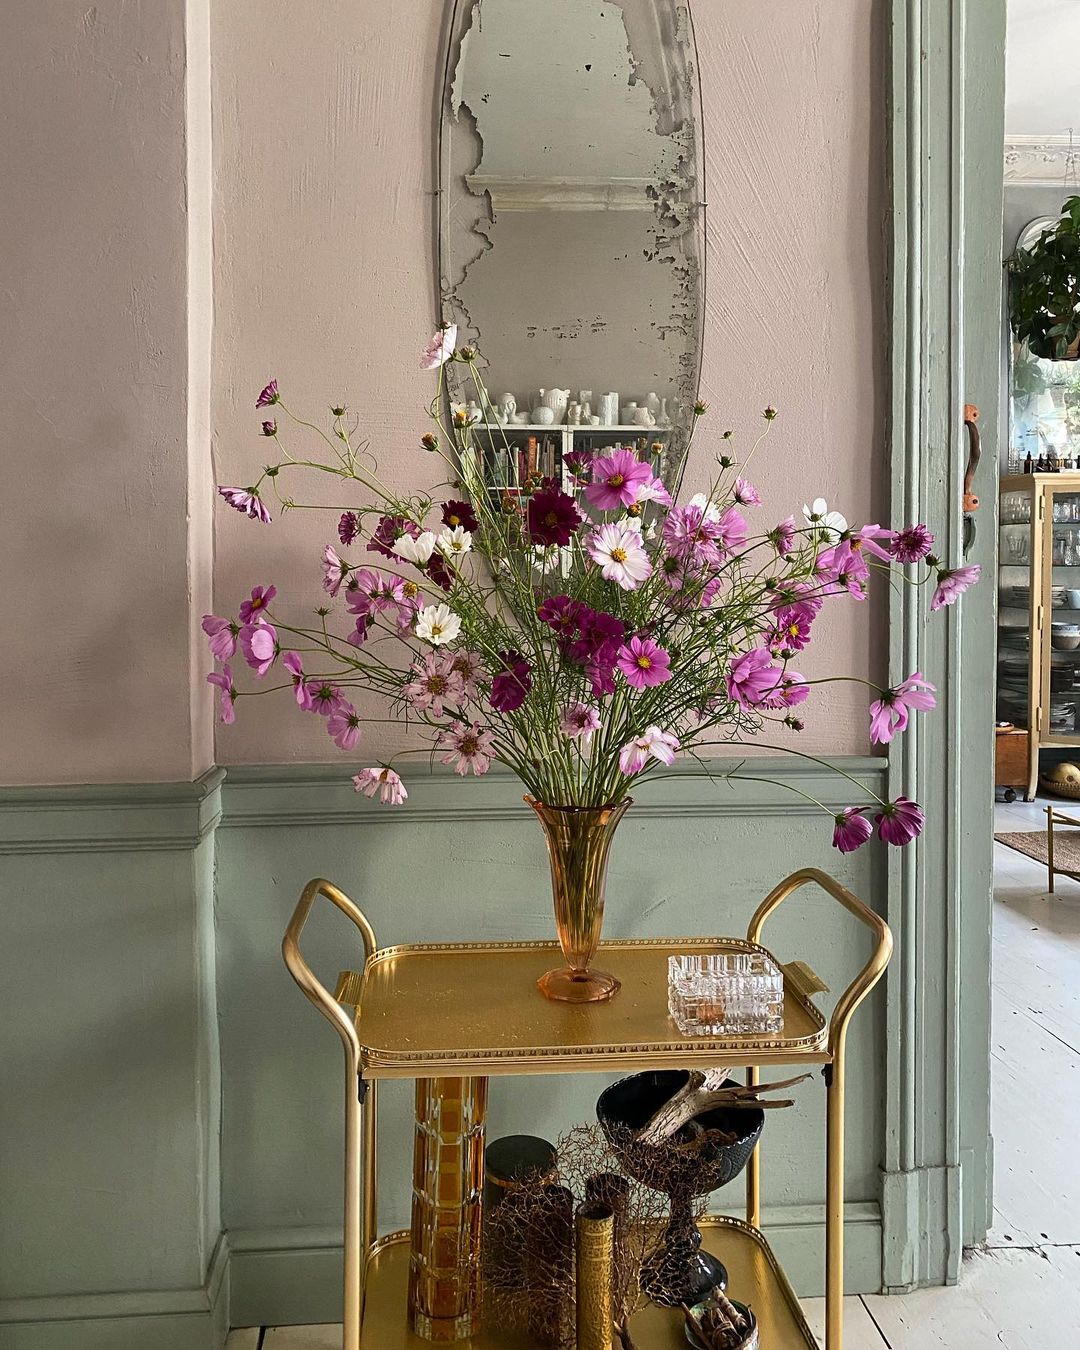 Căn hộ nhỏ xinh ngập tràn sắc hoa tươi của 2 ông chủ cửa hàng hoa tại Ba Lan - Ảnh 9